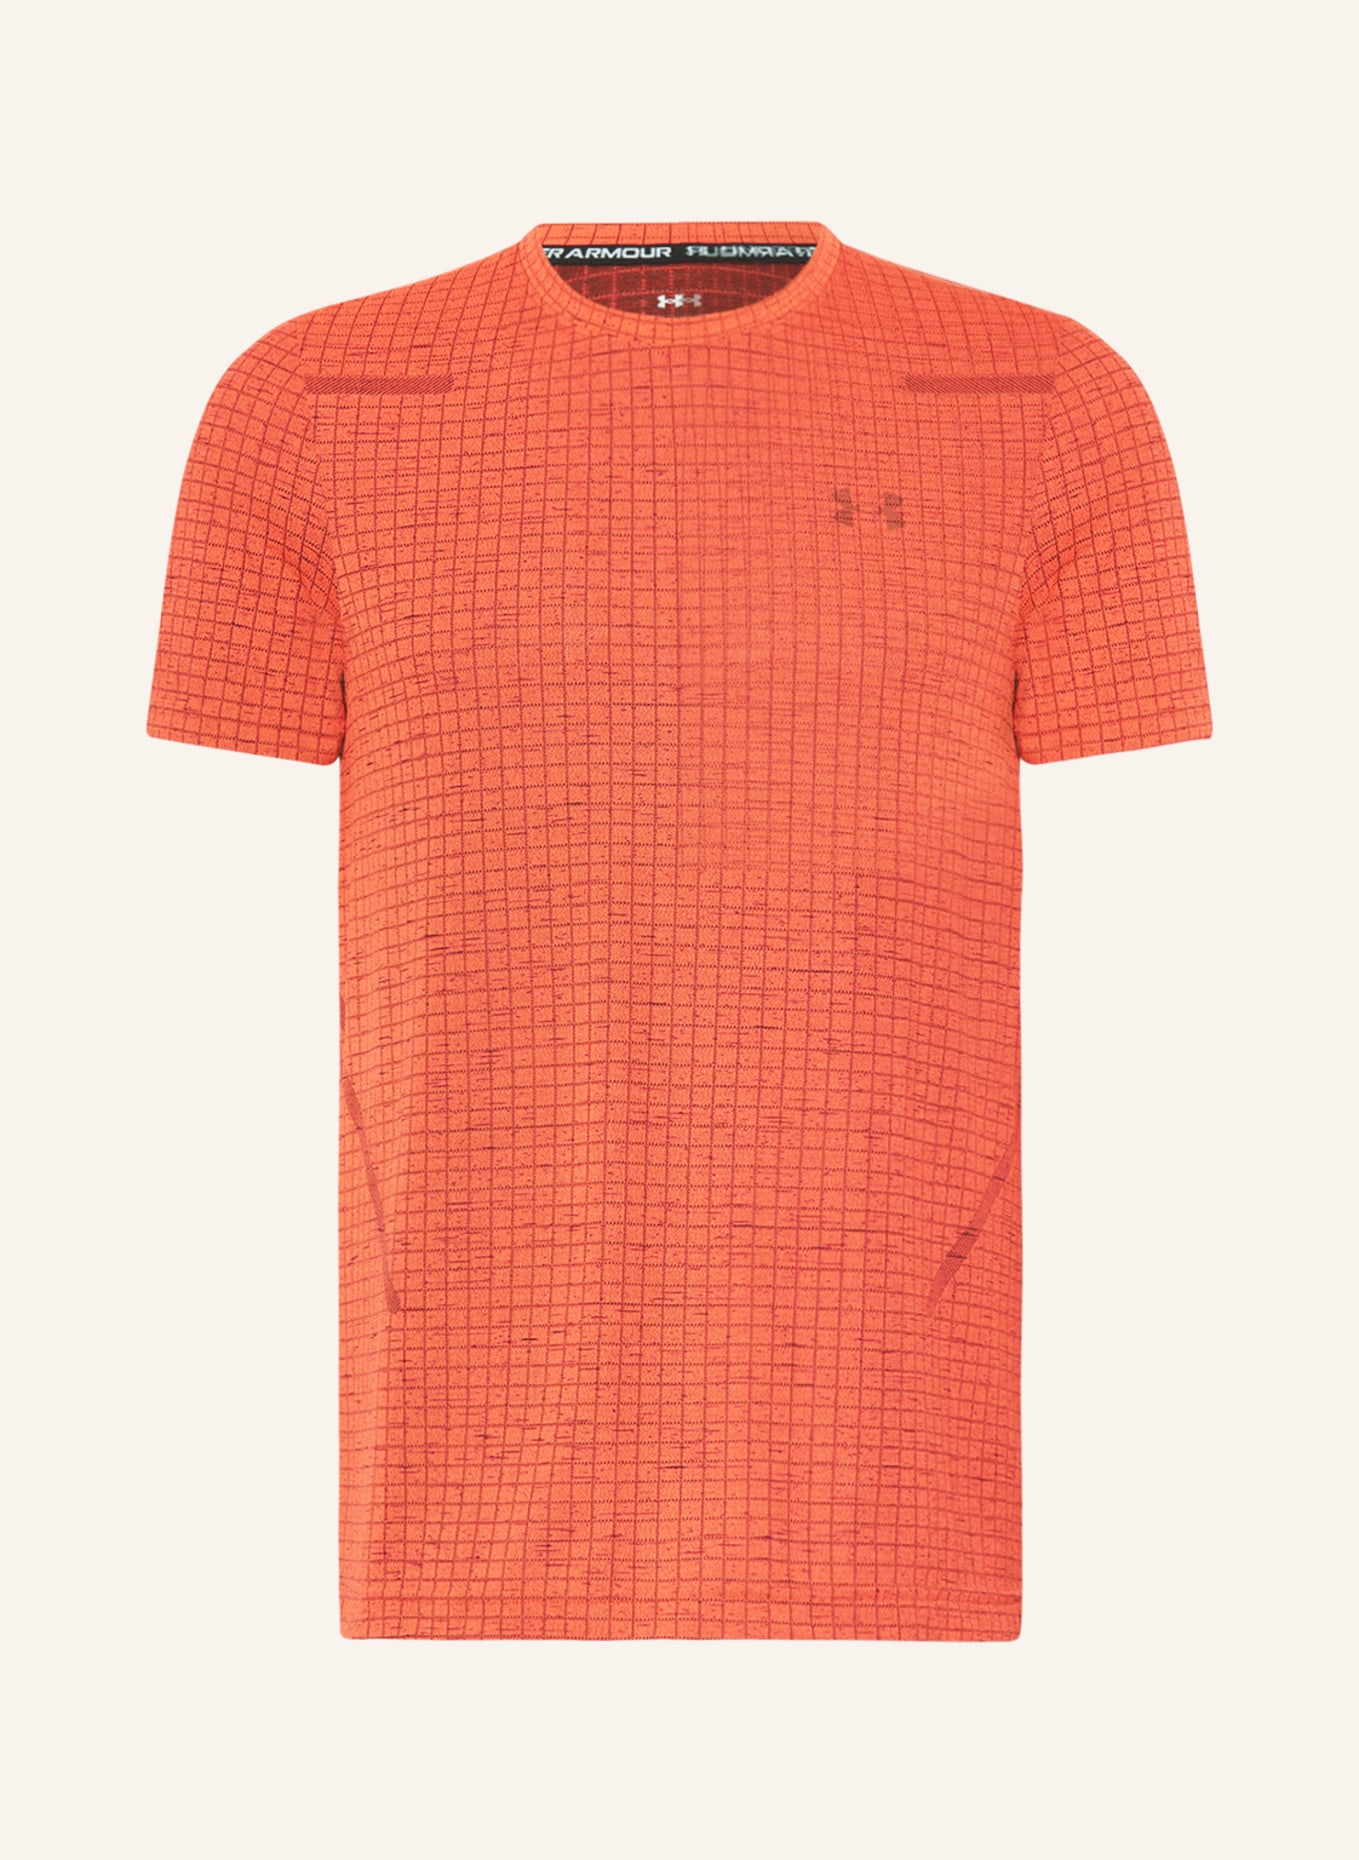 UNDER ARMOUR T-Shirt SEAMLESS GRID mit Mesh, Farbe: ROT/ SCHWARZ (Bild 1)